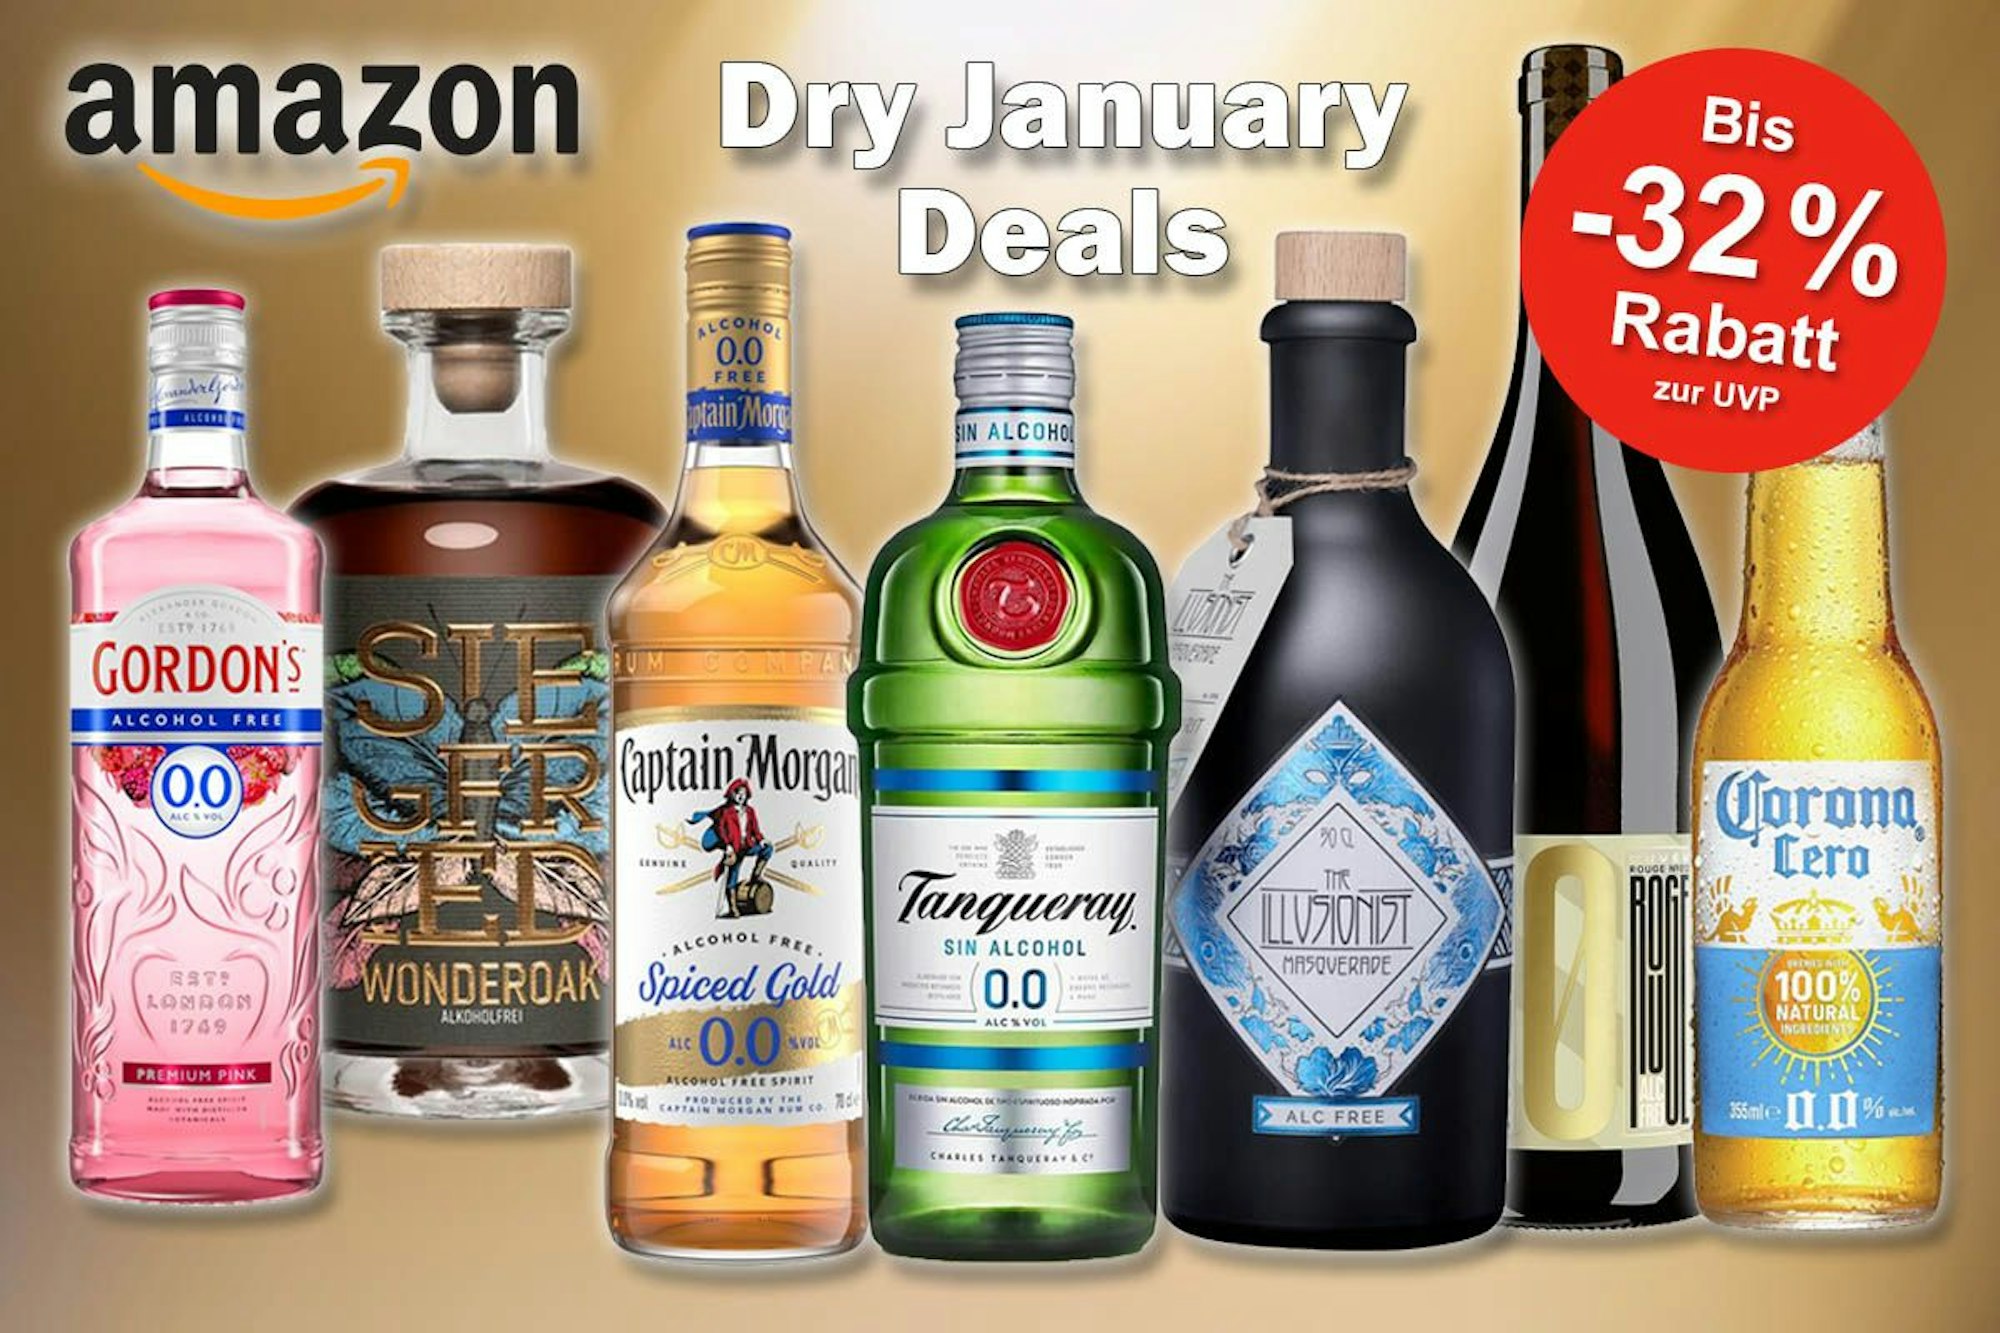 Alkoholfreie Spirituosen, Weine und Biere von Tanqueray, Gordon's, Captain Morgan, Siegfried, Illusionist zum Dry January.